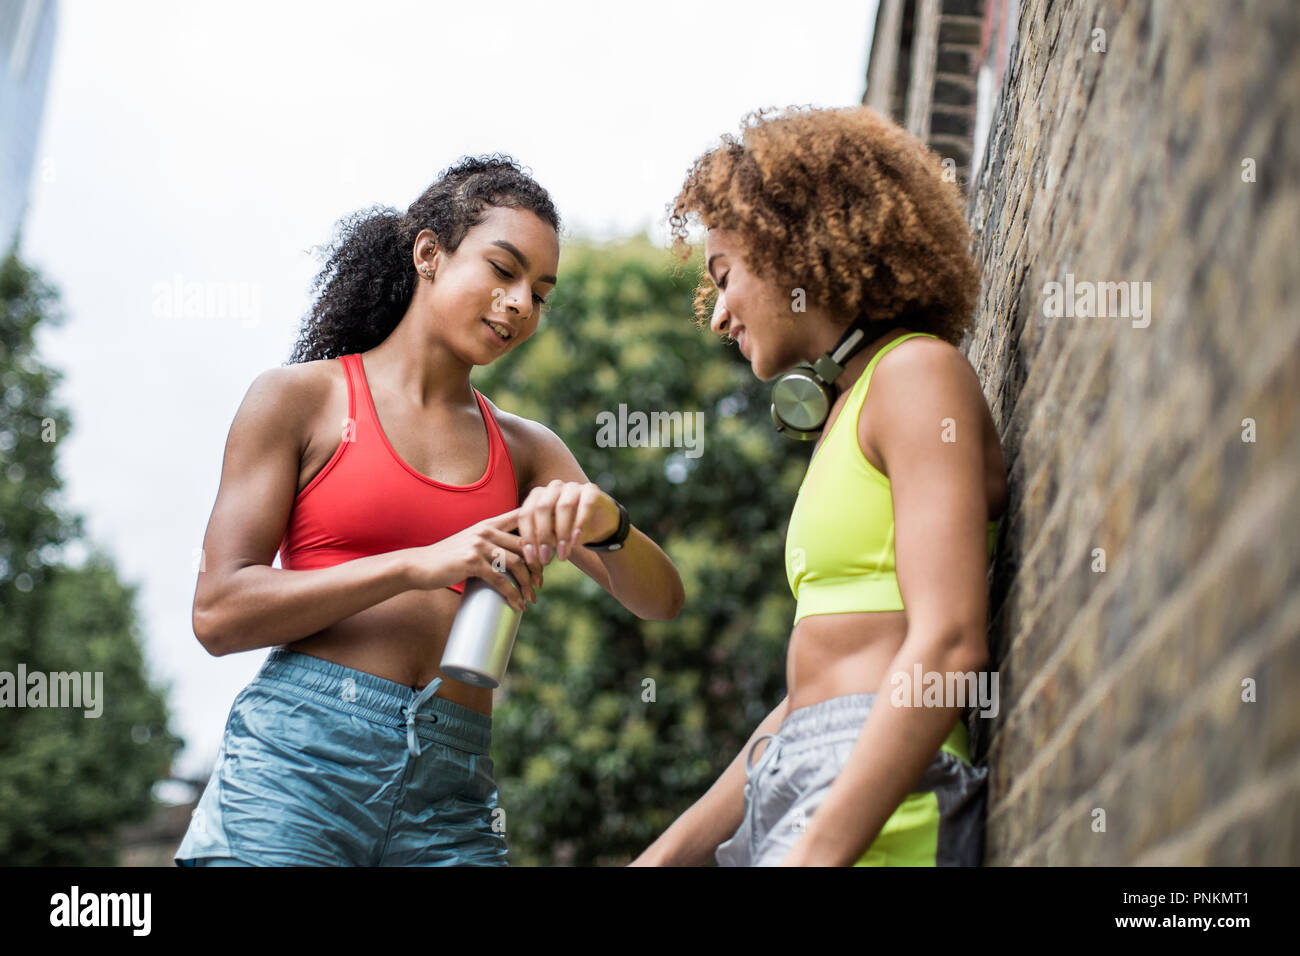 Les jeunes femelles adultes en faisant une pause sur une course en milieu urbain ville Banque D'Images